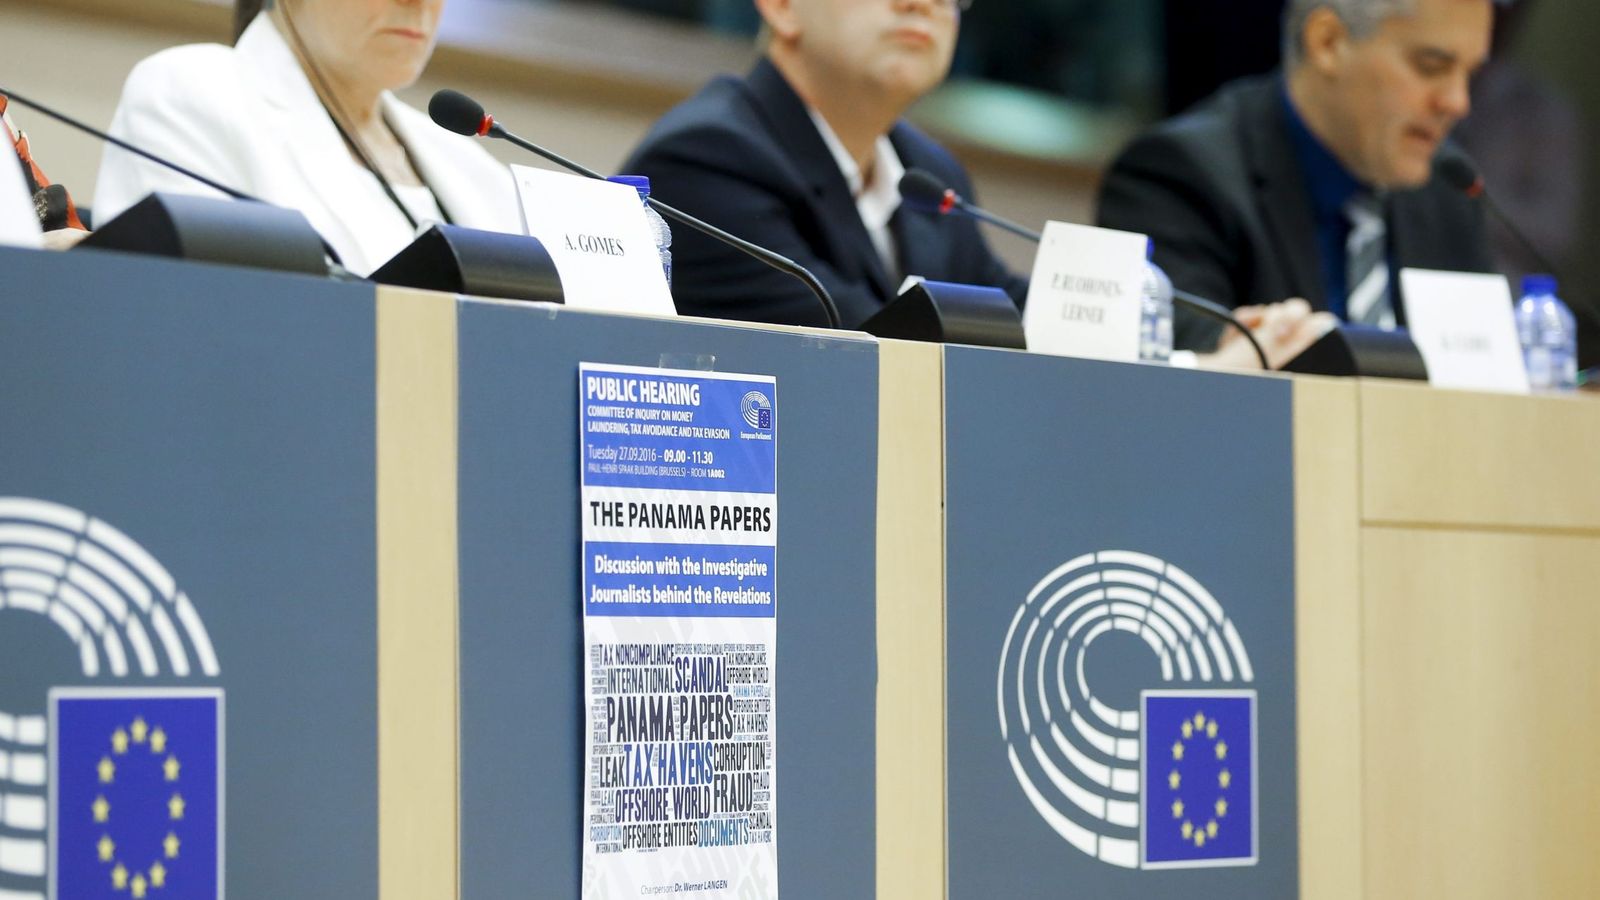 Foto: Imagen de la primera reunión de la comisión de investigación sobre los papeles de Panamá en el Parlamento Europeo. (Efe)